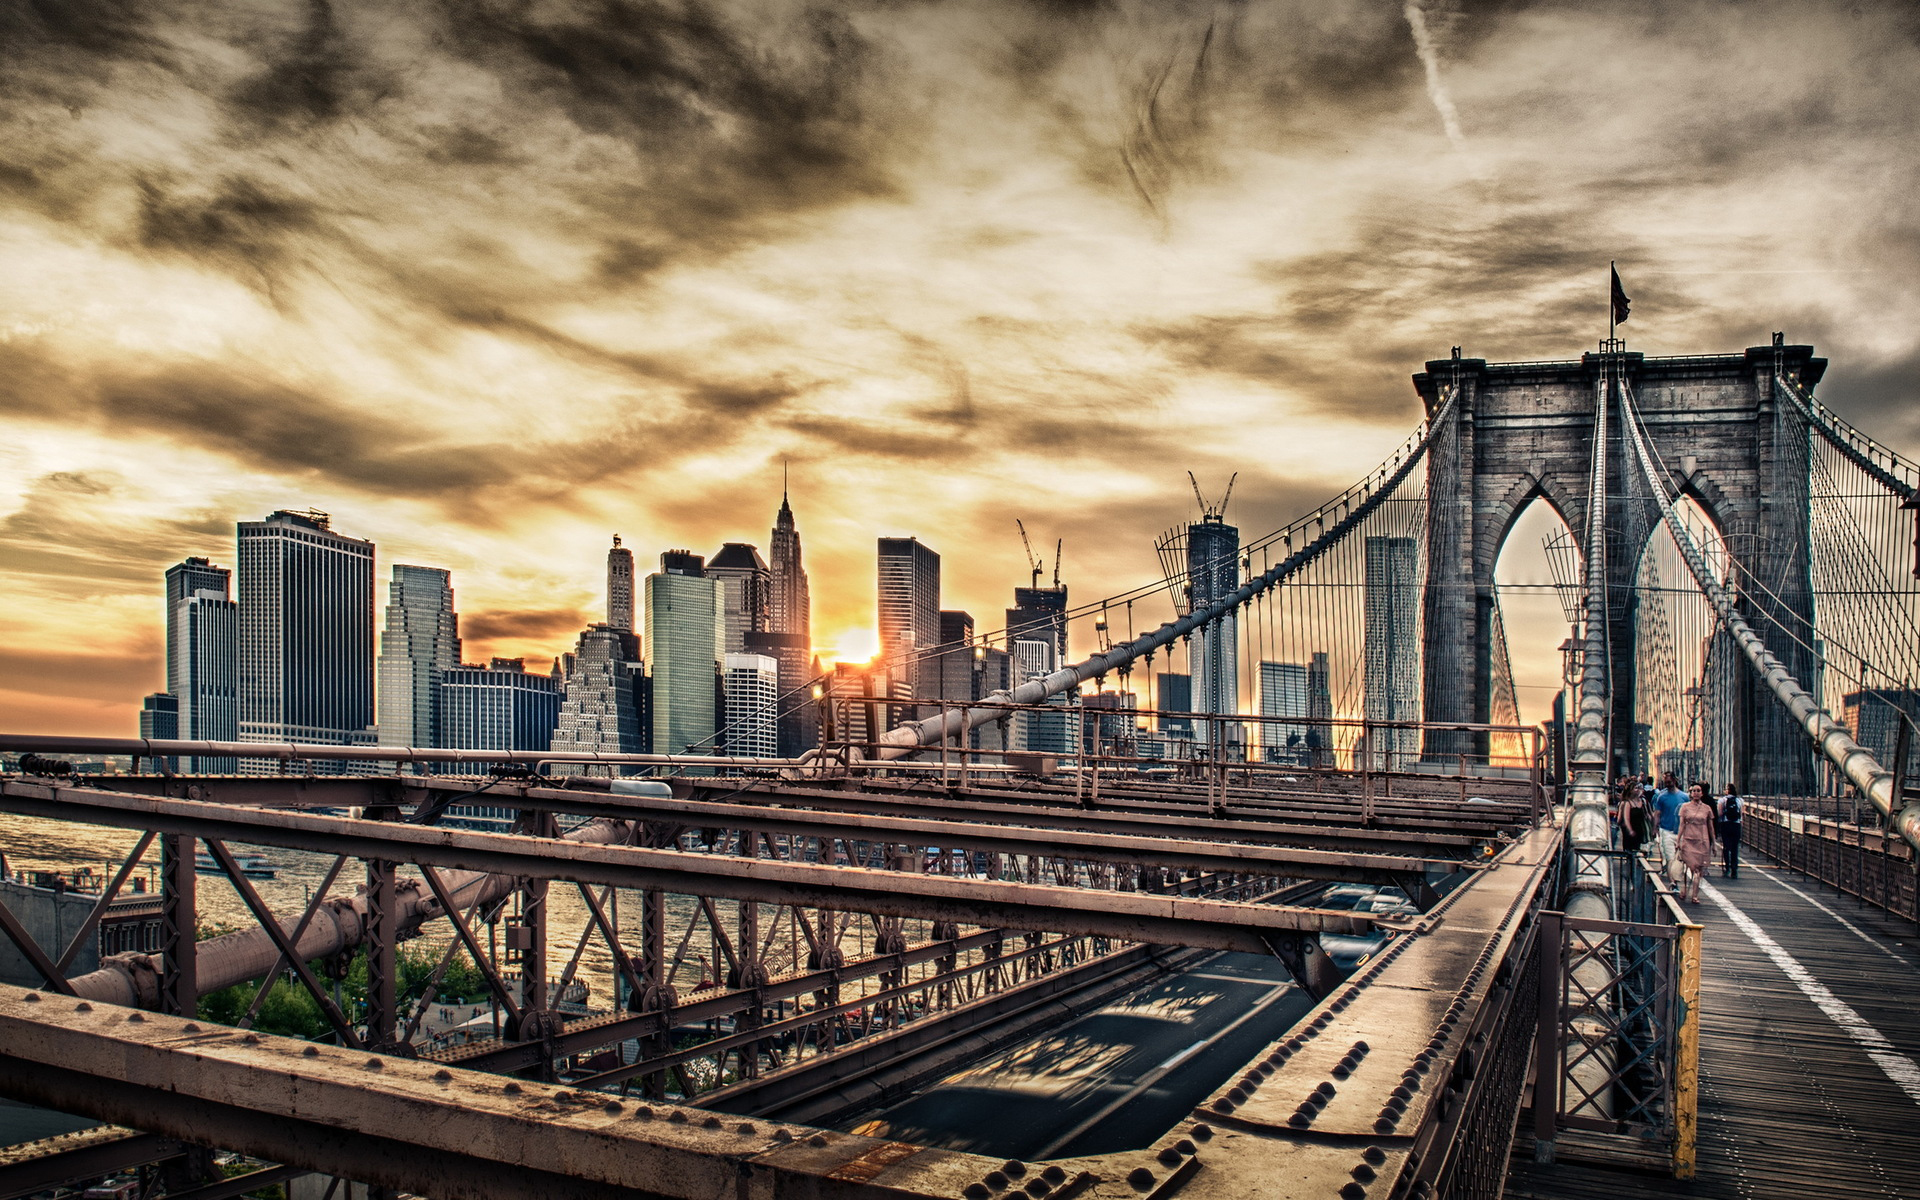 Brooklyn Bridge HD Wallpaper Background Image 1920x1200 ID